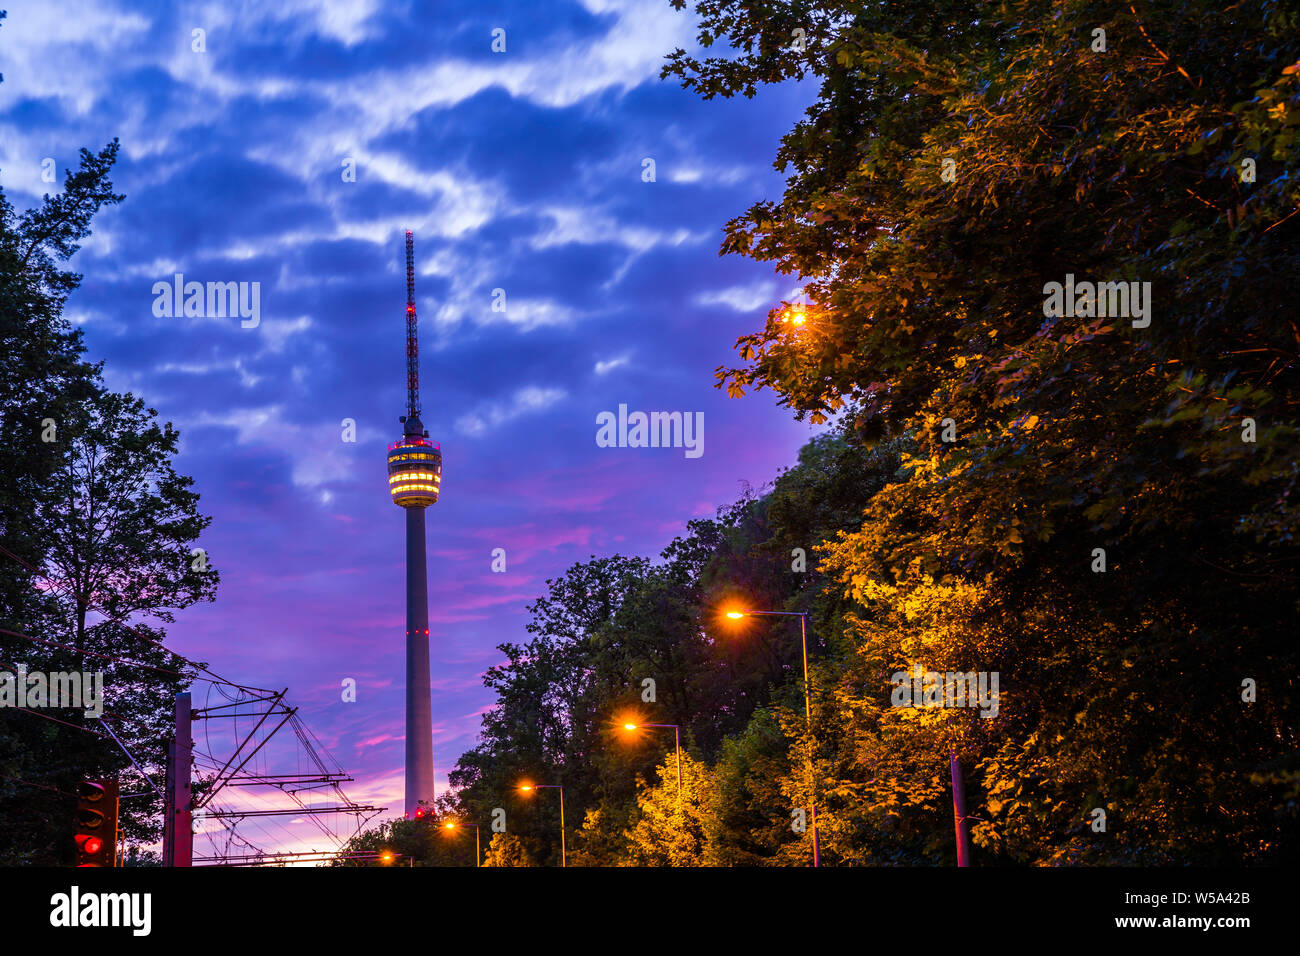 Alemania, cielo nocturno de torre de televisión de la ciudad de Stuttgart en bosque verde naturaleza del paisaje iluminado por las luces de la calle y el rojo cielo de la posluminiscencia Foto de stock